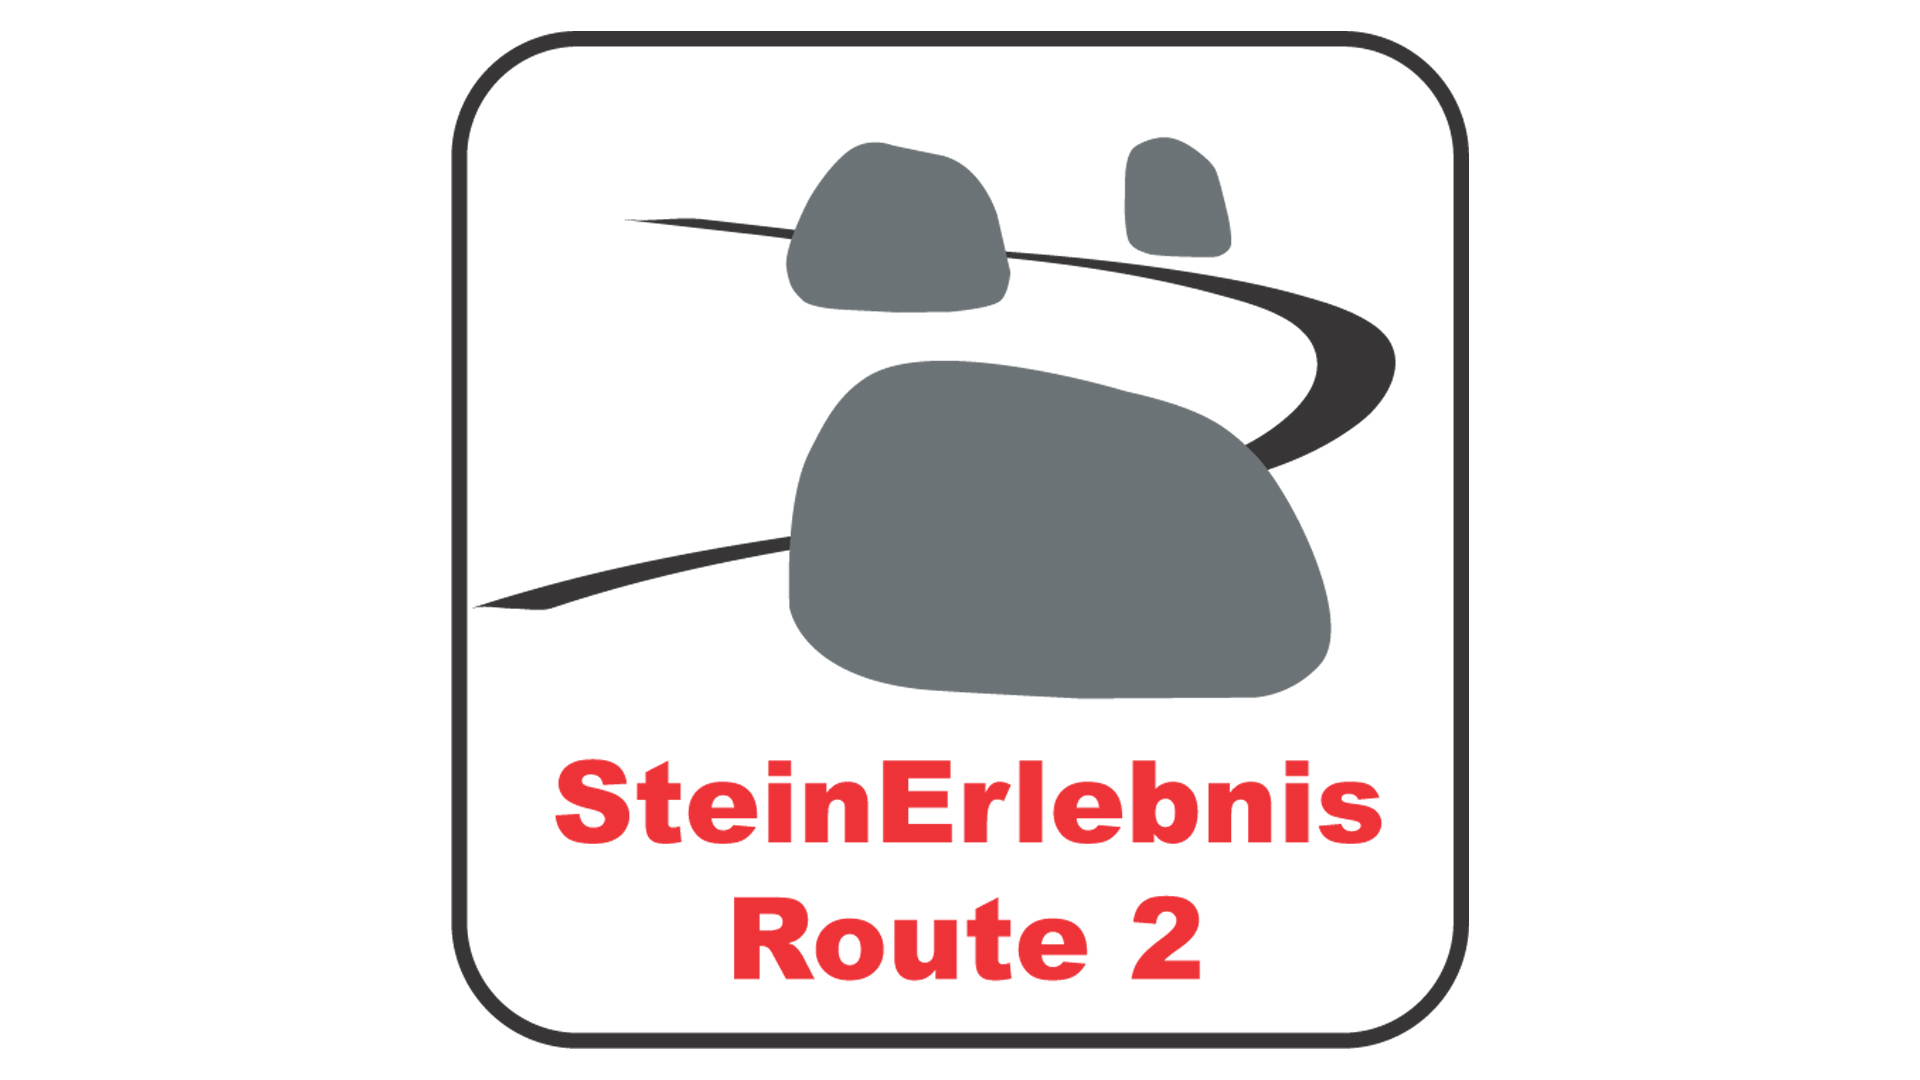 steinerlebnis-route-2_16-9